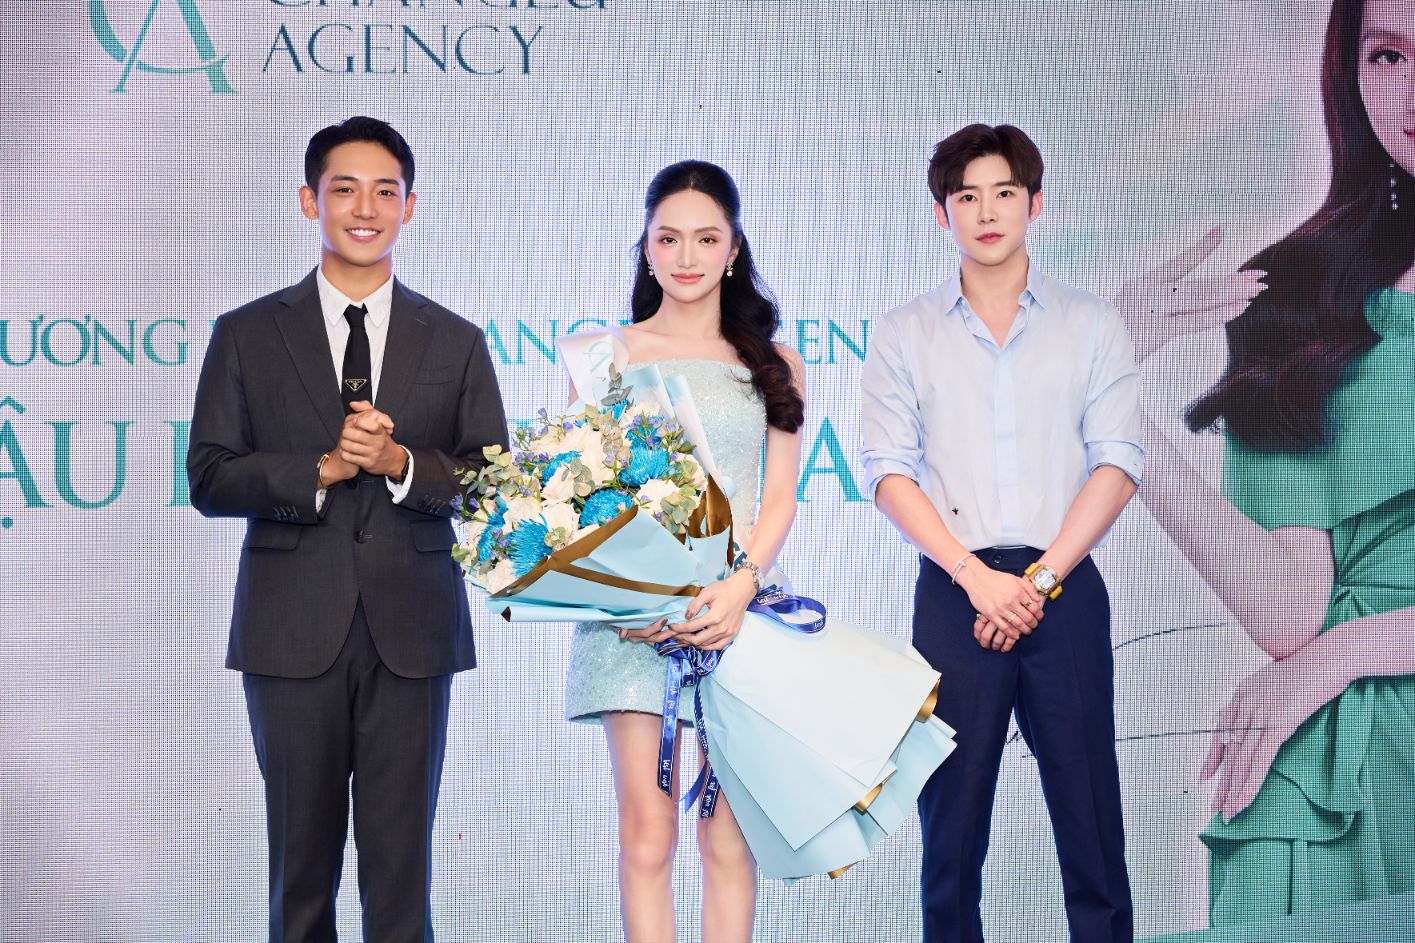 Hương Giang Changeu Agency 2 Hương Giang trở thành Đại sứ thương hiệu dịch vụ thẩm mỹ tại Hàn Quốc